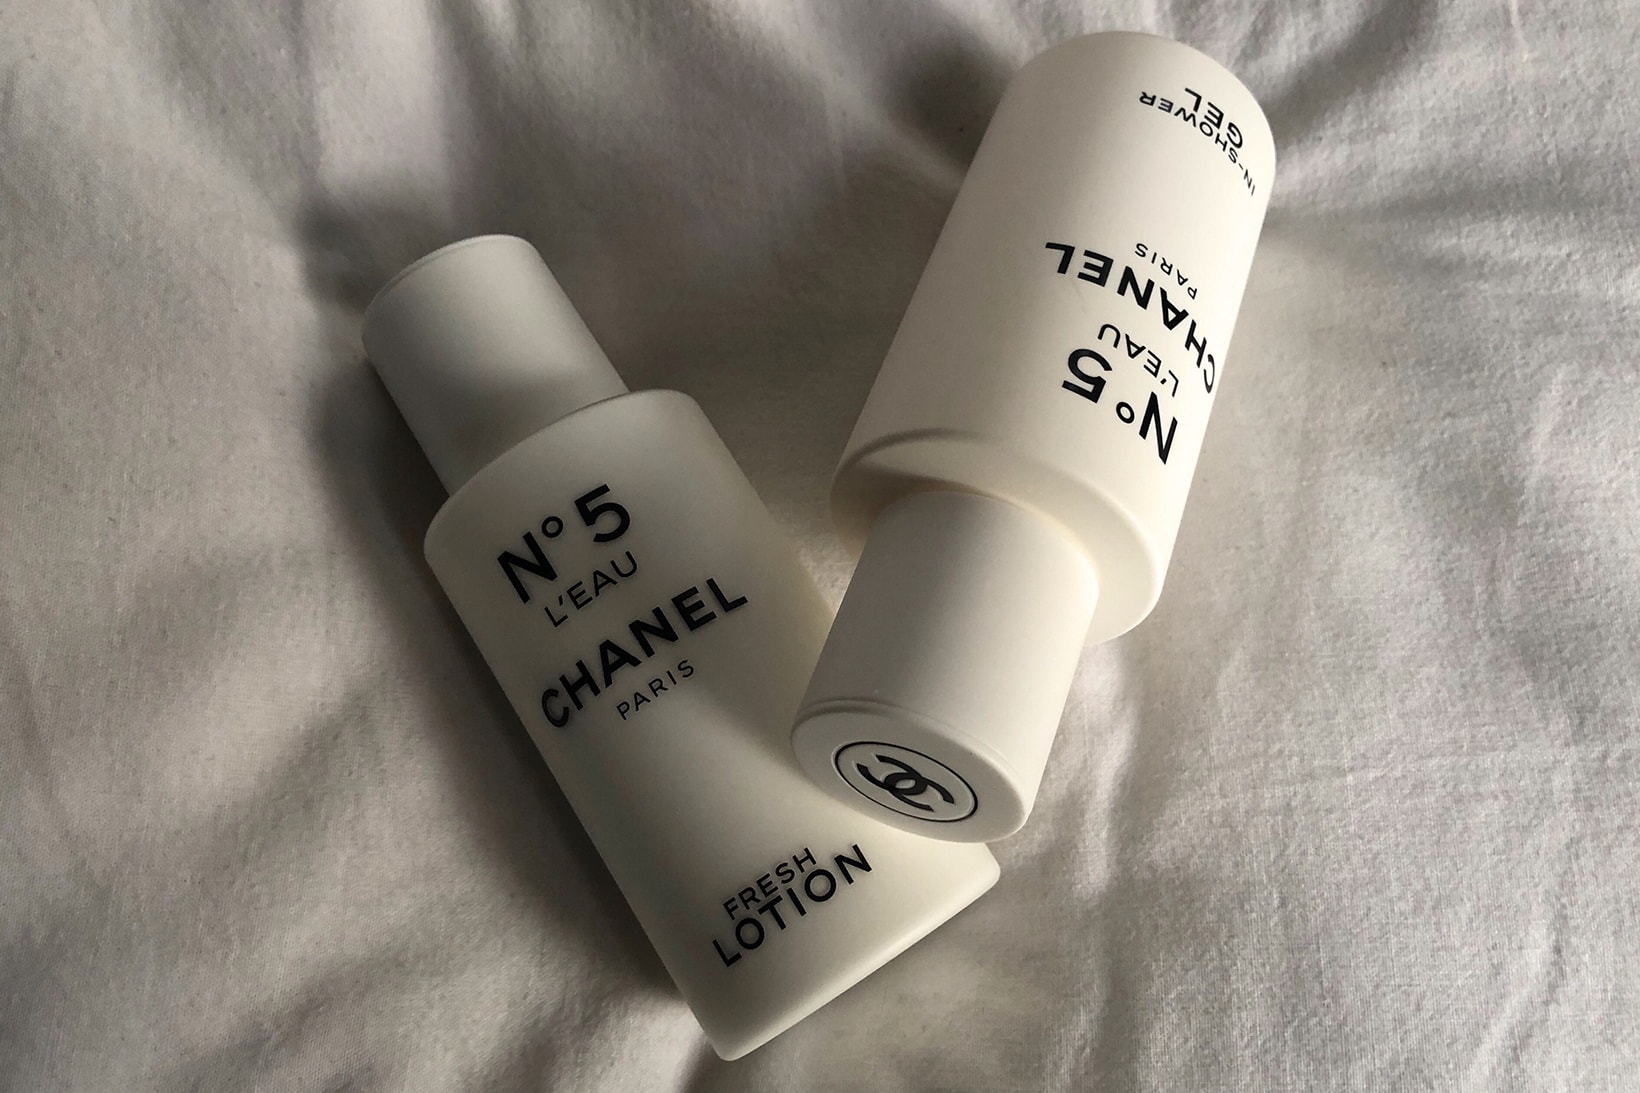 Chanel N°5 L'Eau In Shower Gel Fresh Body Lotion Travel Skincare Bath Products